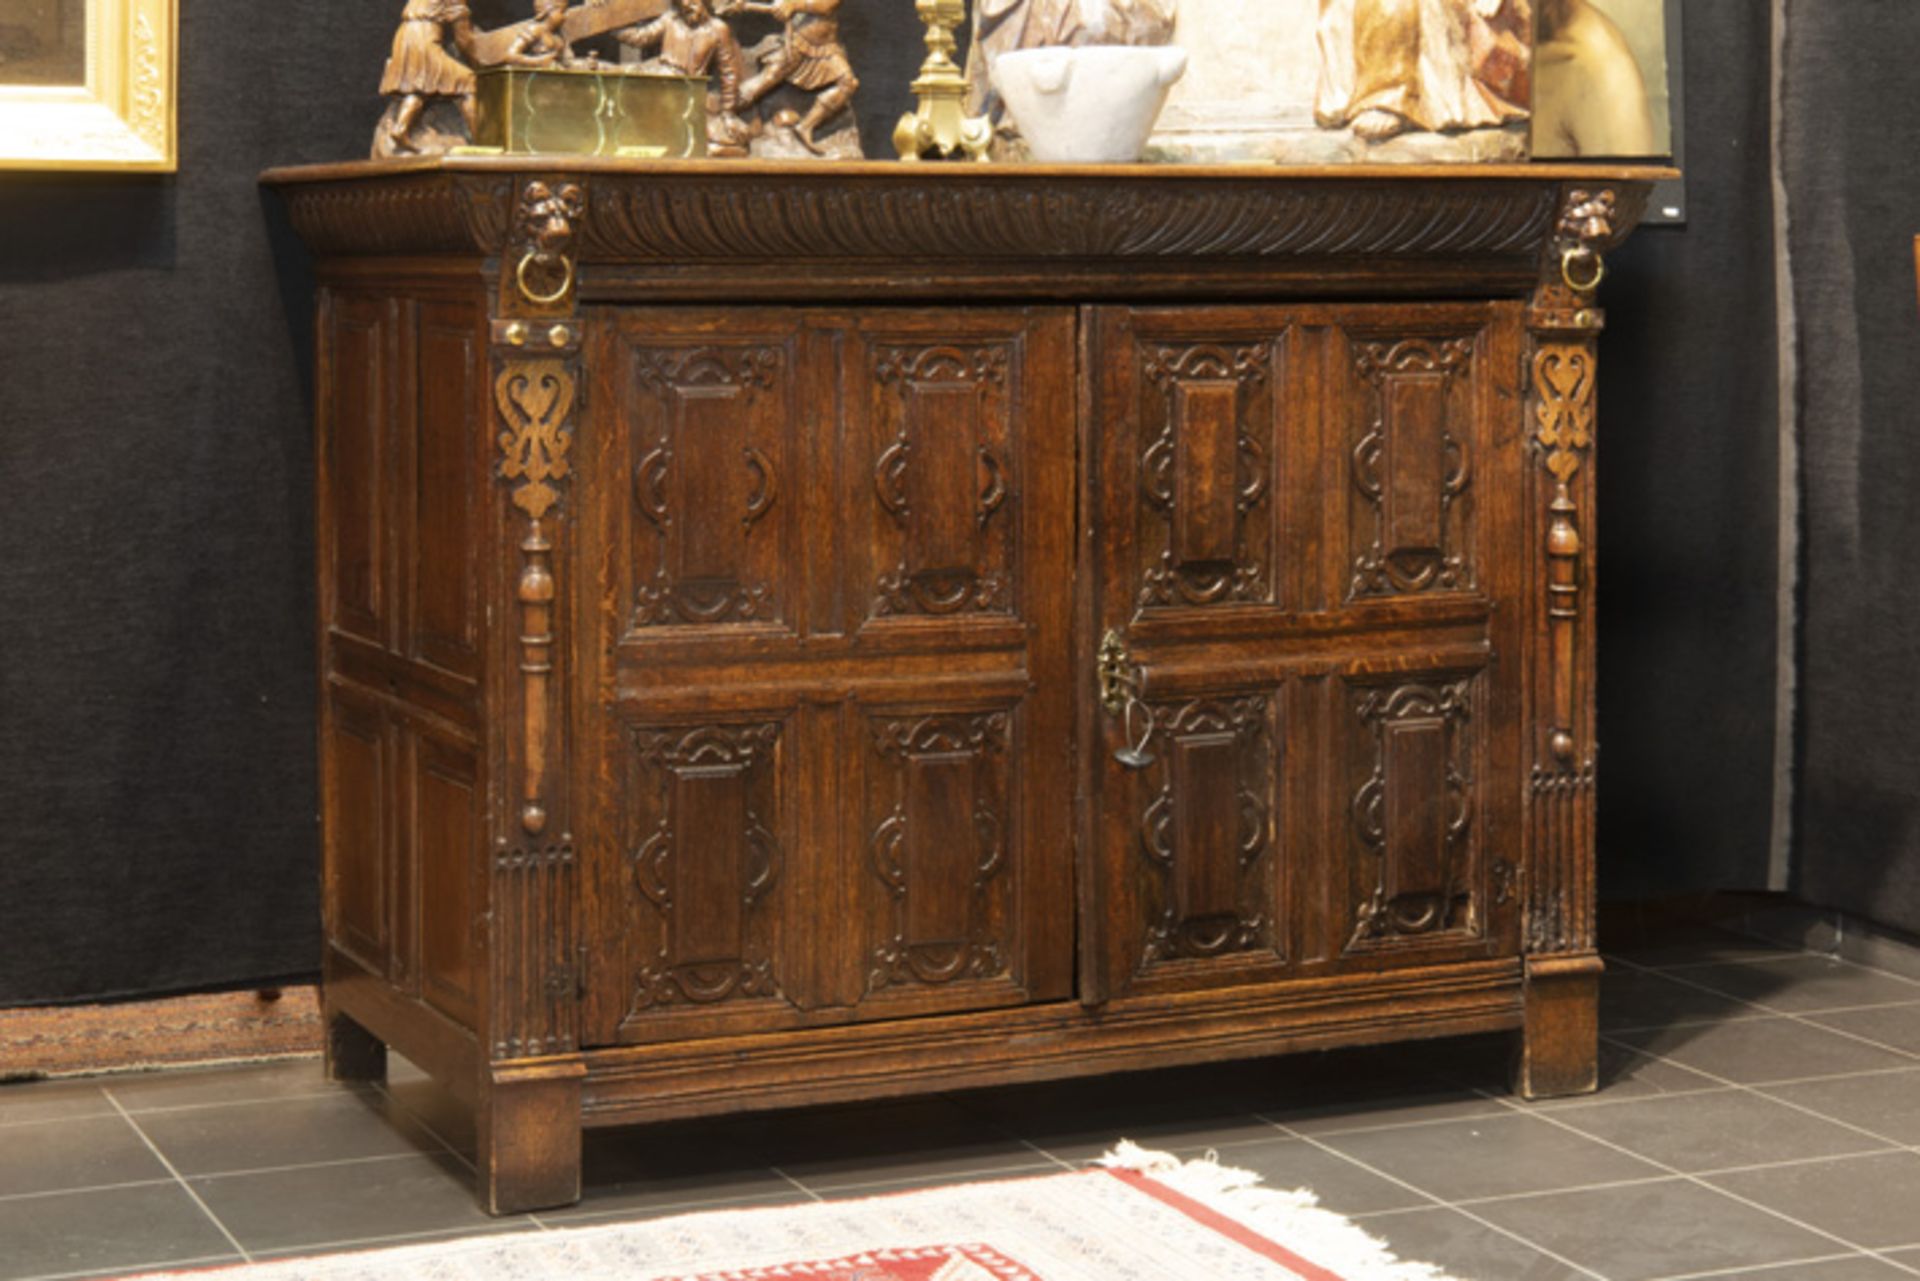 VLAANDEREN - 17° EEUW mooi Renaissance-meubel in eik met twee deuren met [...] - Image 2 of 3